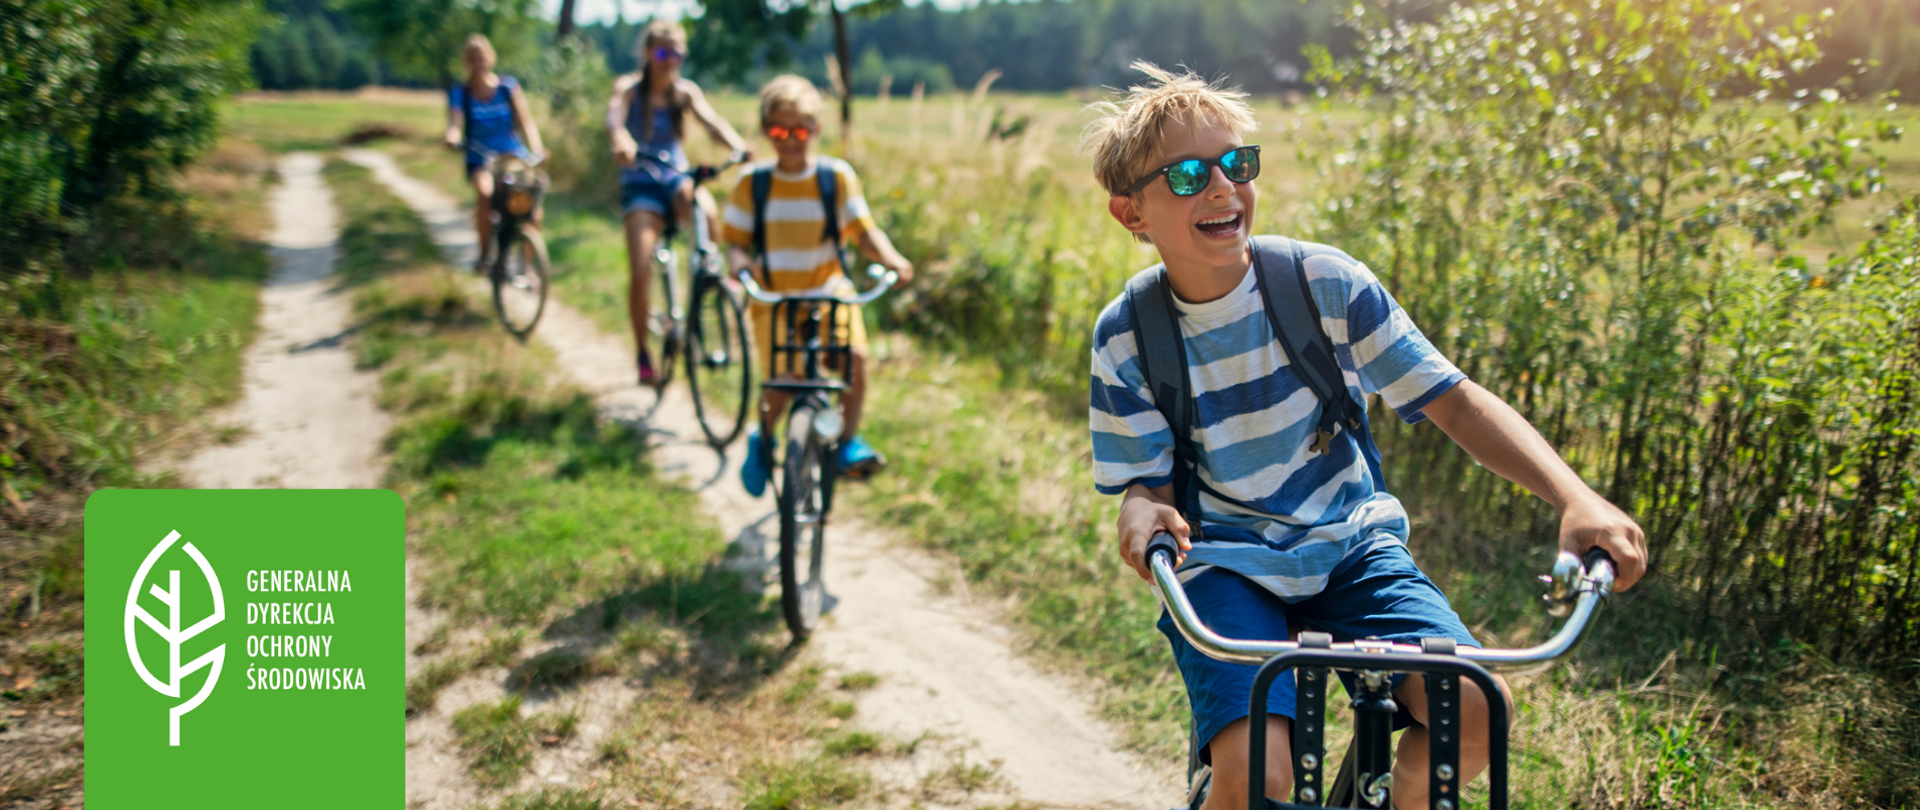 Zdjęcie przedstawia dzieci jadące na rowerach